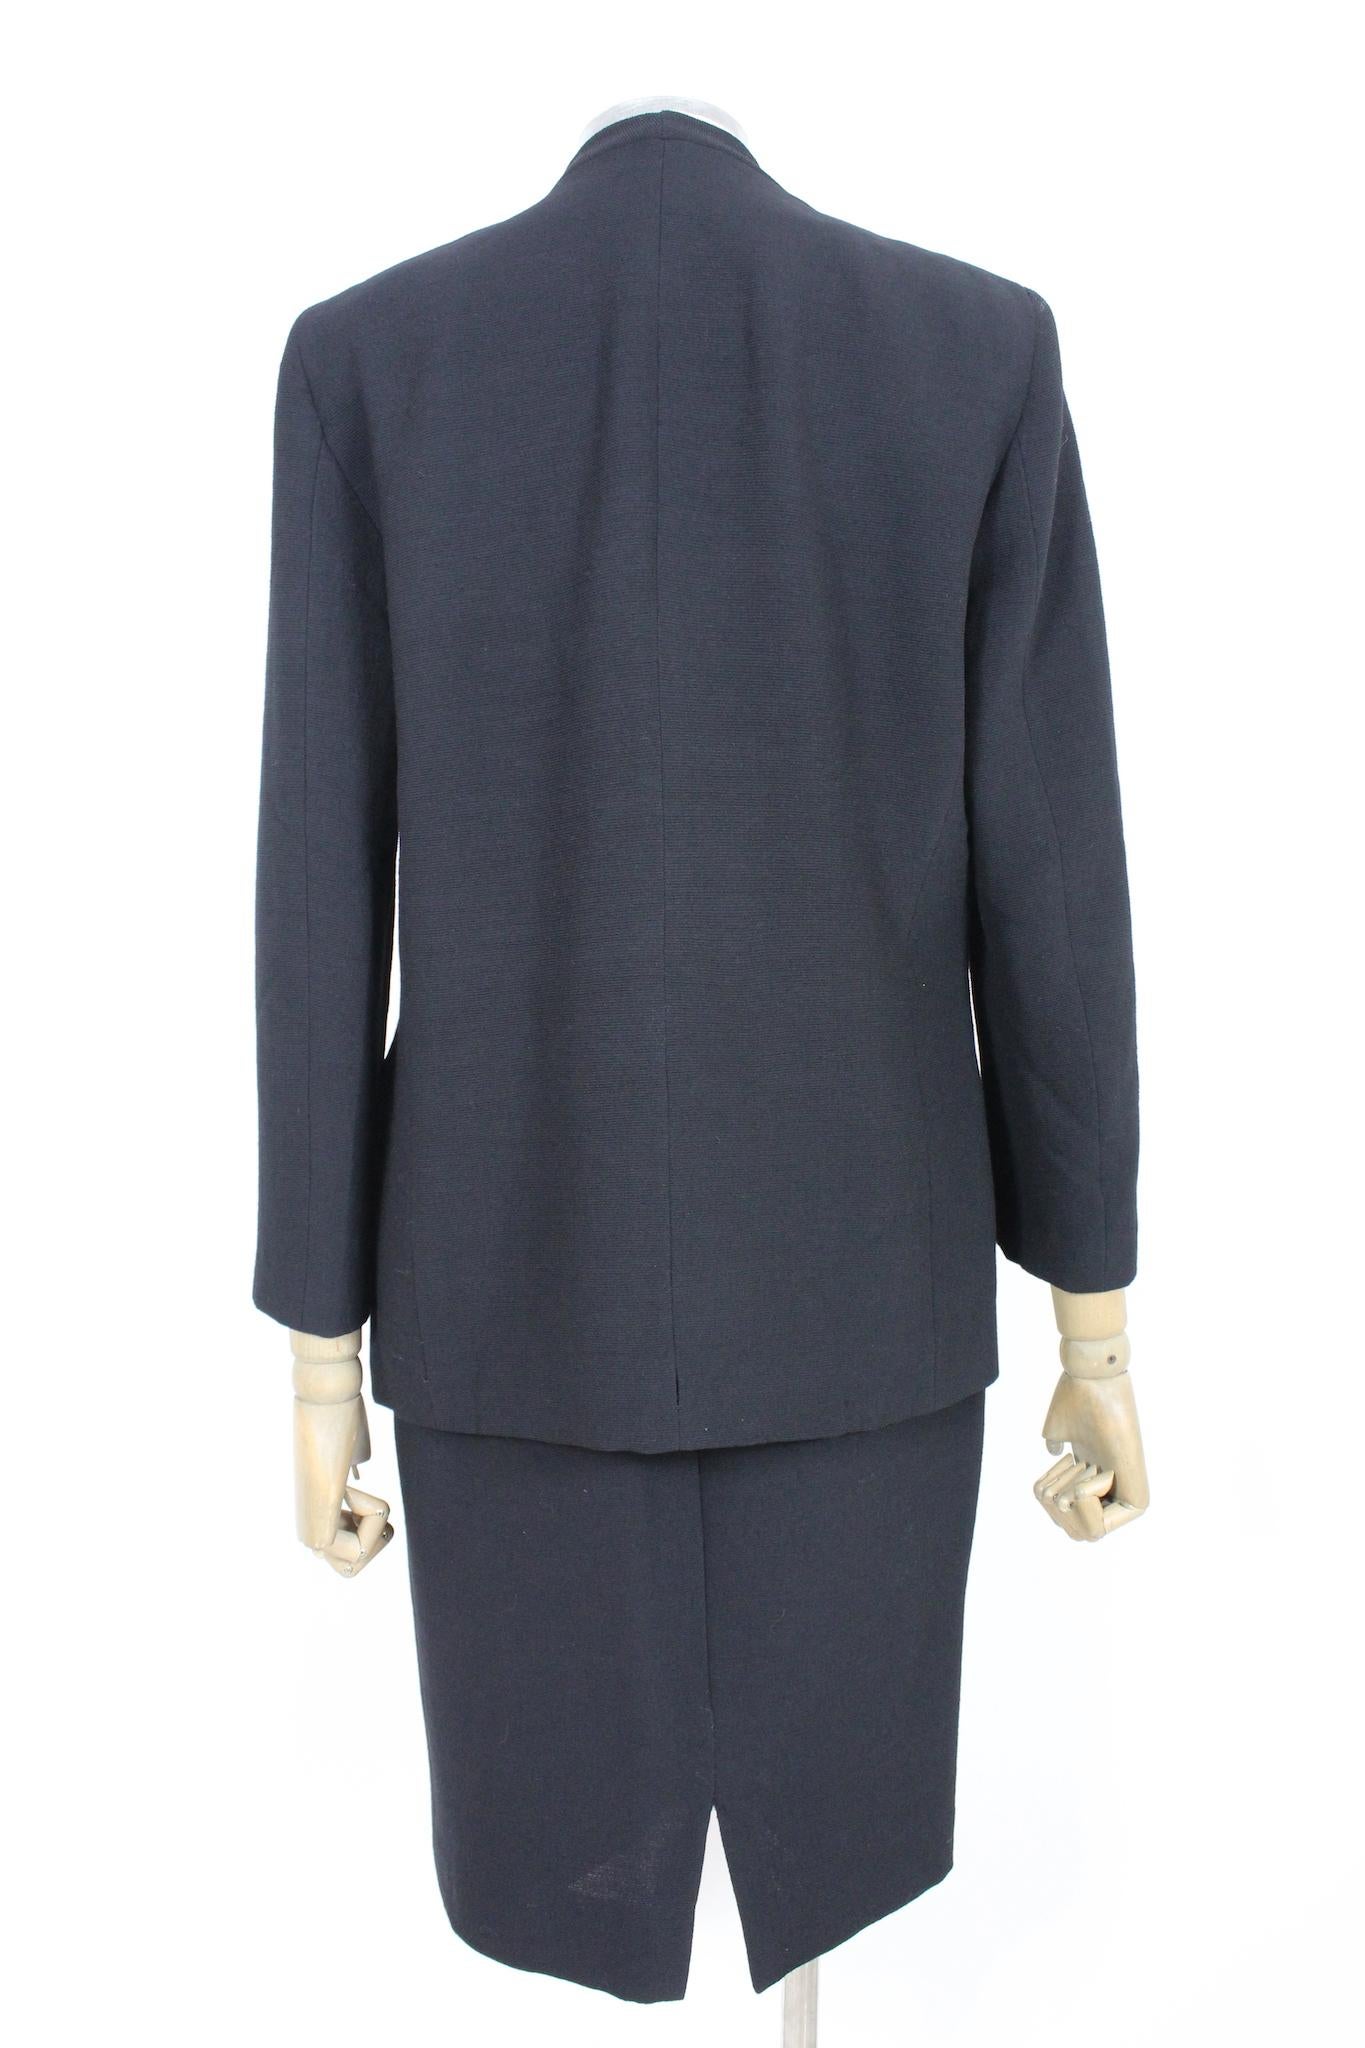 Cet élégant costume vintage Pierre Cardin est le complément parfait de toute garde-robe féminine. La veste et la jupe noires sont fabriquées dans un tissu en laine de haute qualité et présentent un détail de boutons brodés. Le design vintage des